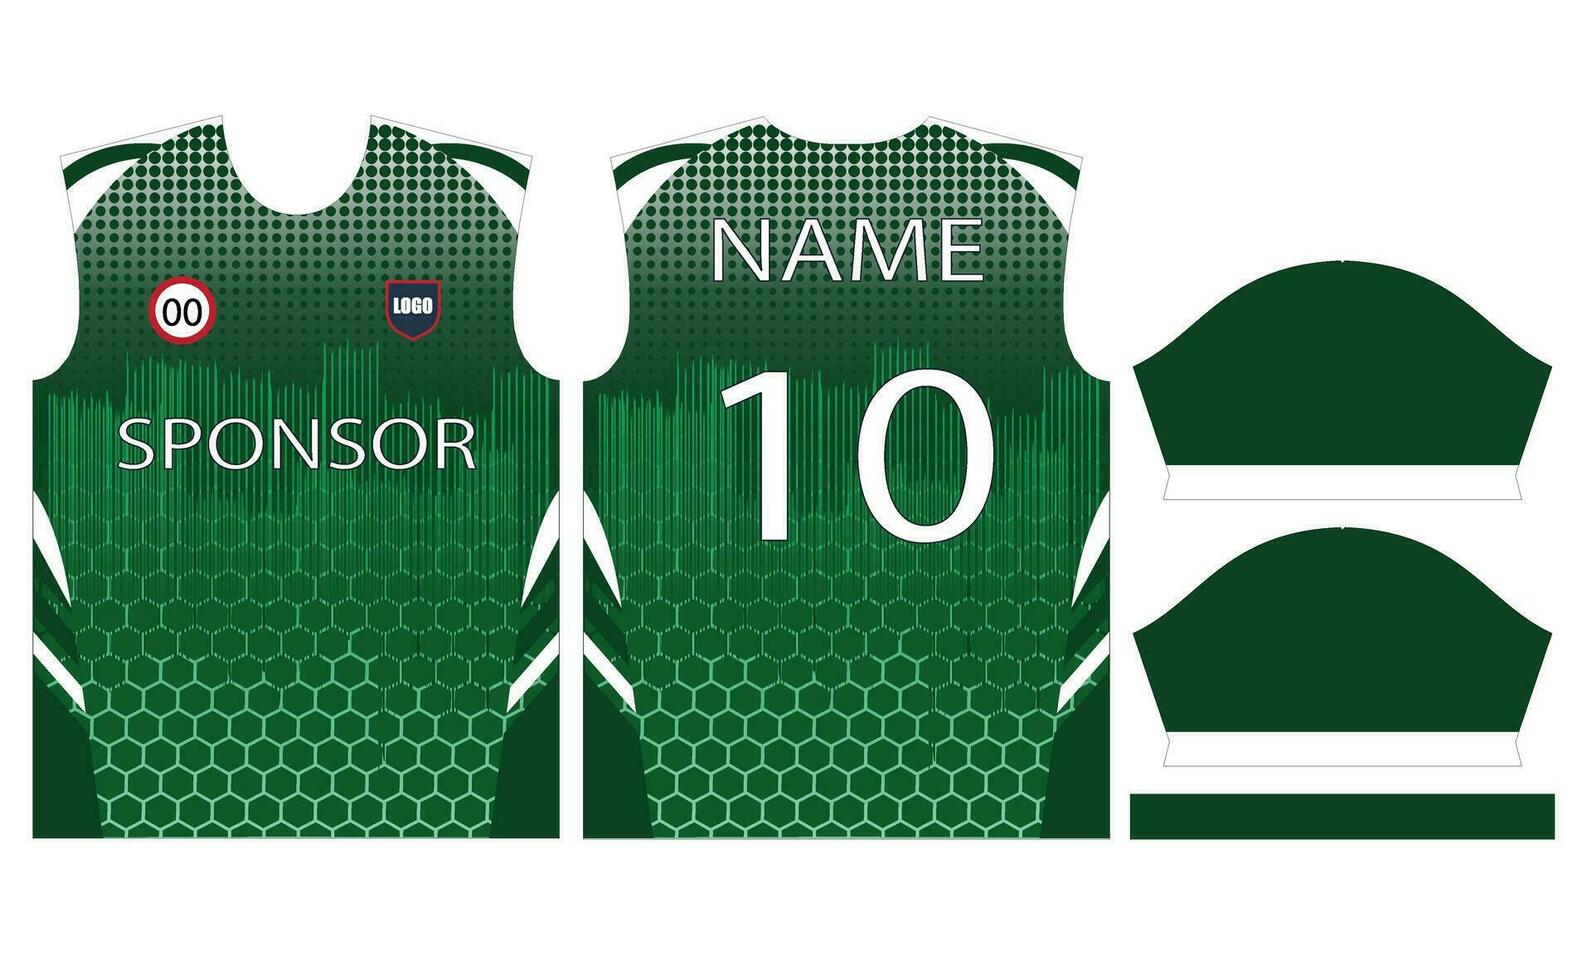 fotboll jersey design för sublimering eller fotboll cricket jersey design vektor